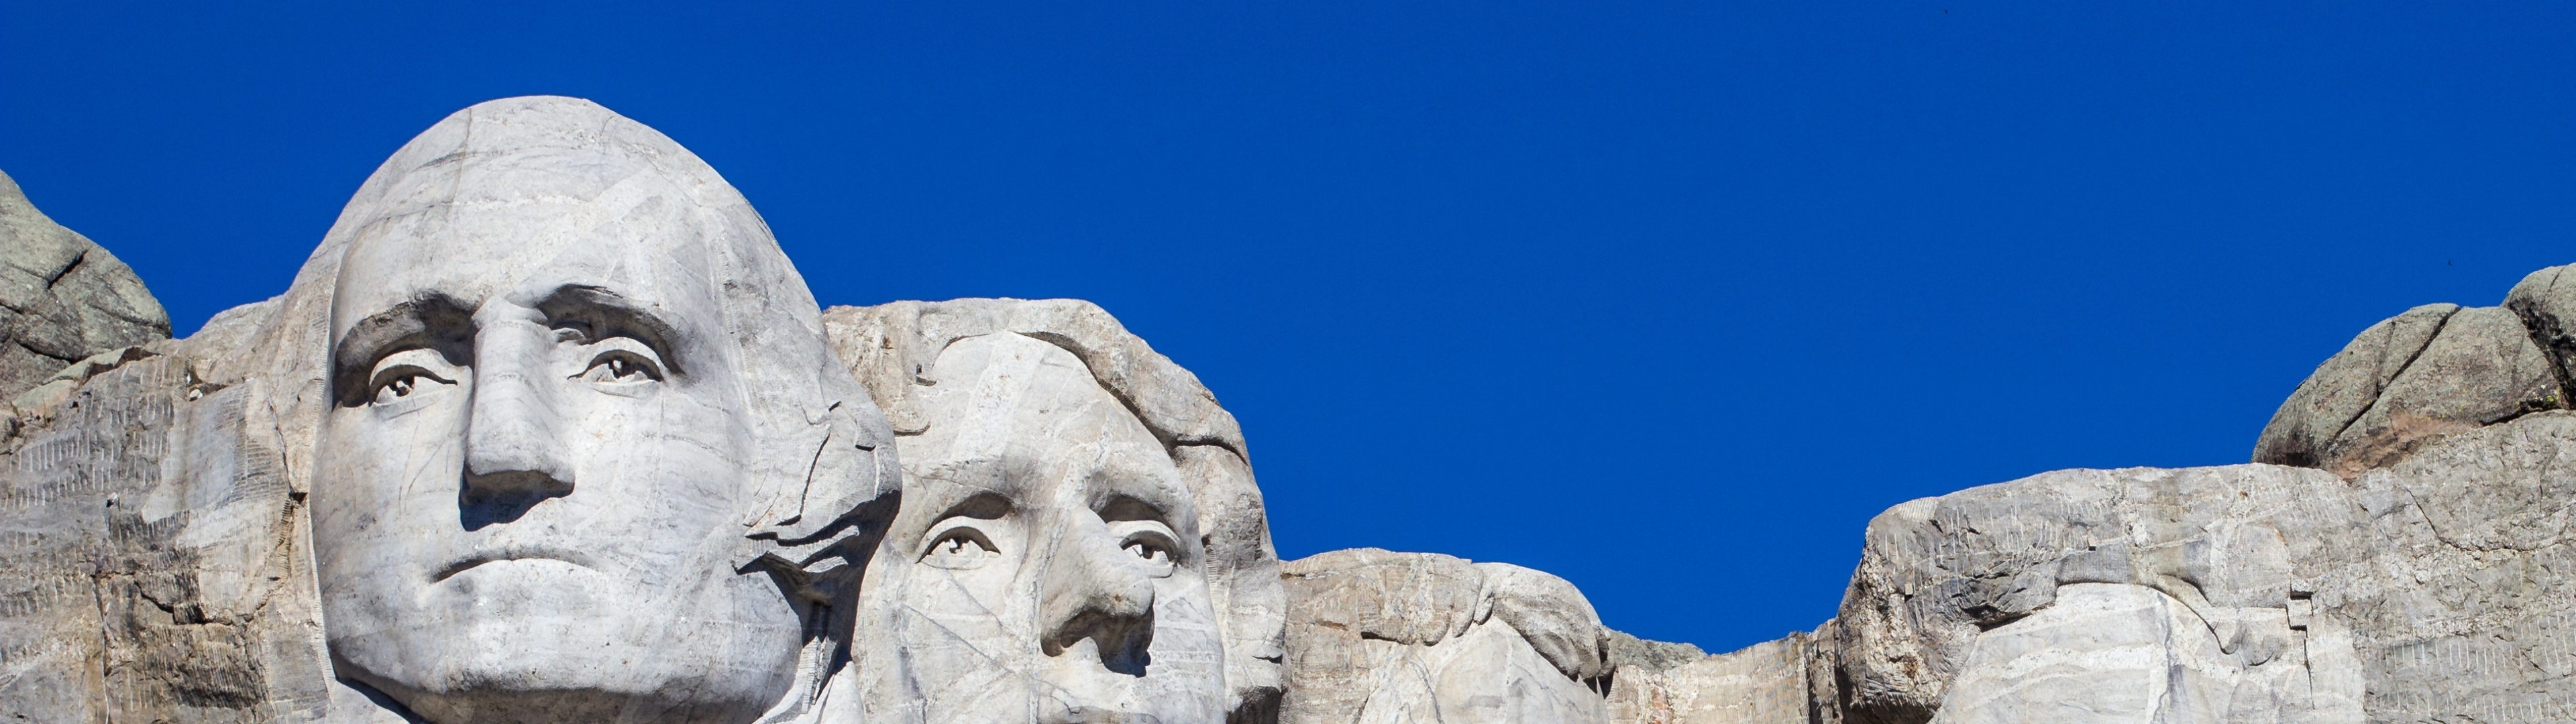 4K wallpaper, Presidents in stone, South Dakota beauty, Blue sky backdrop, 3840x1080 Dual Screen Desktop